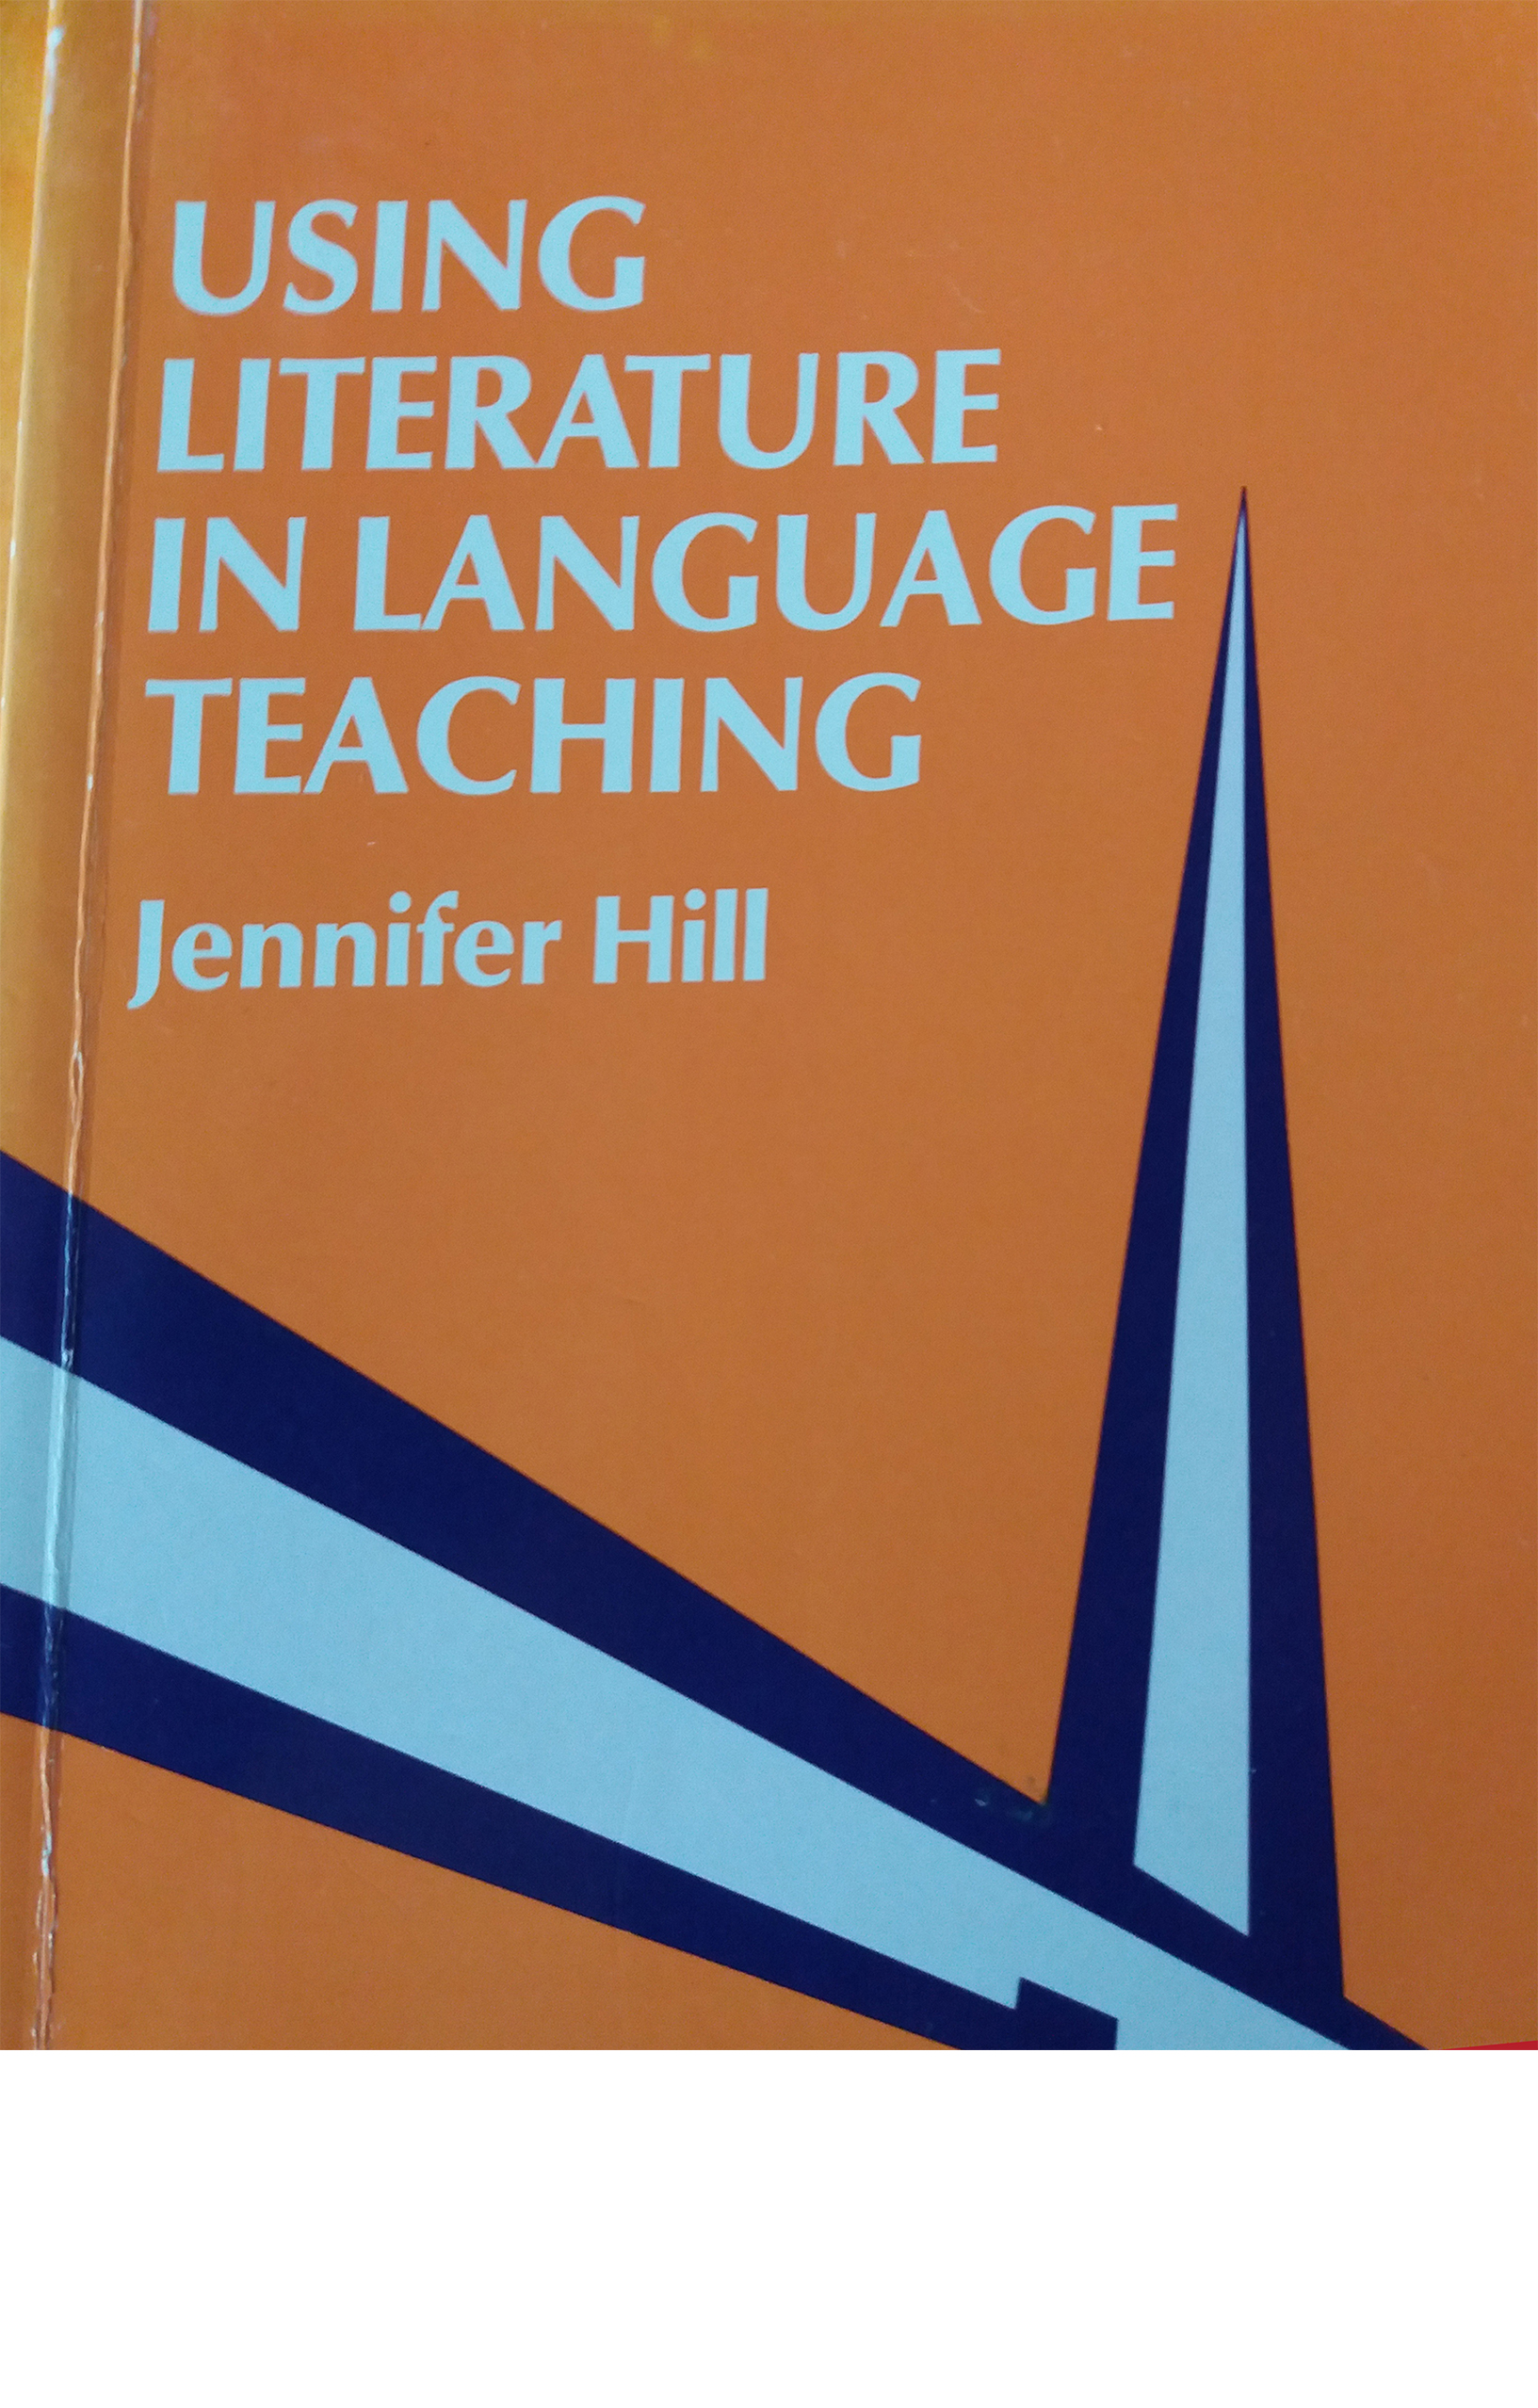  Literature in Language Teaching